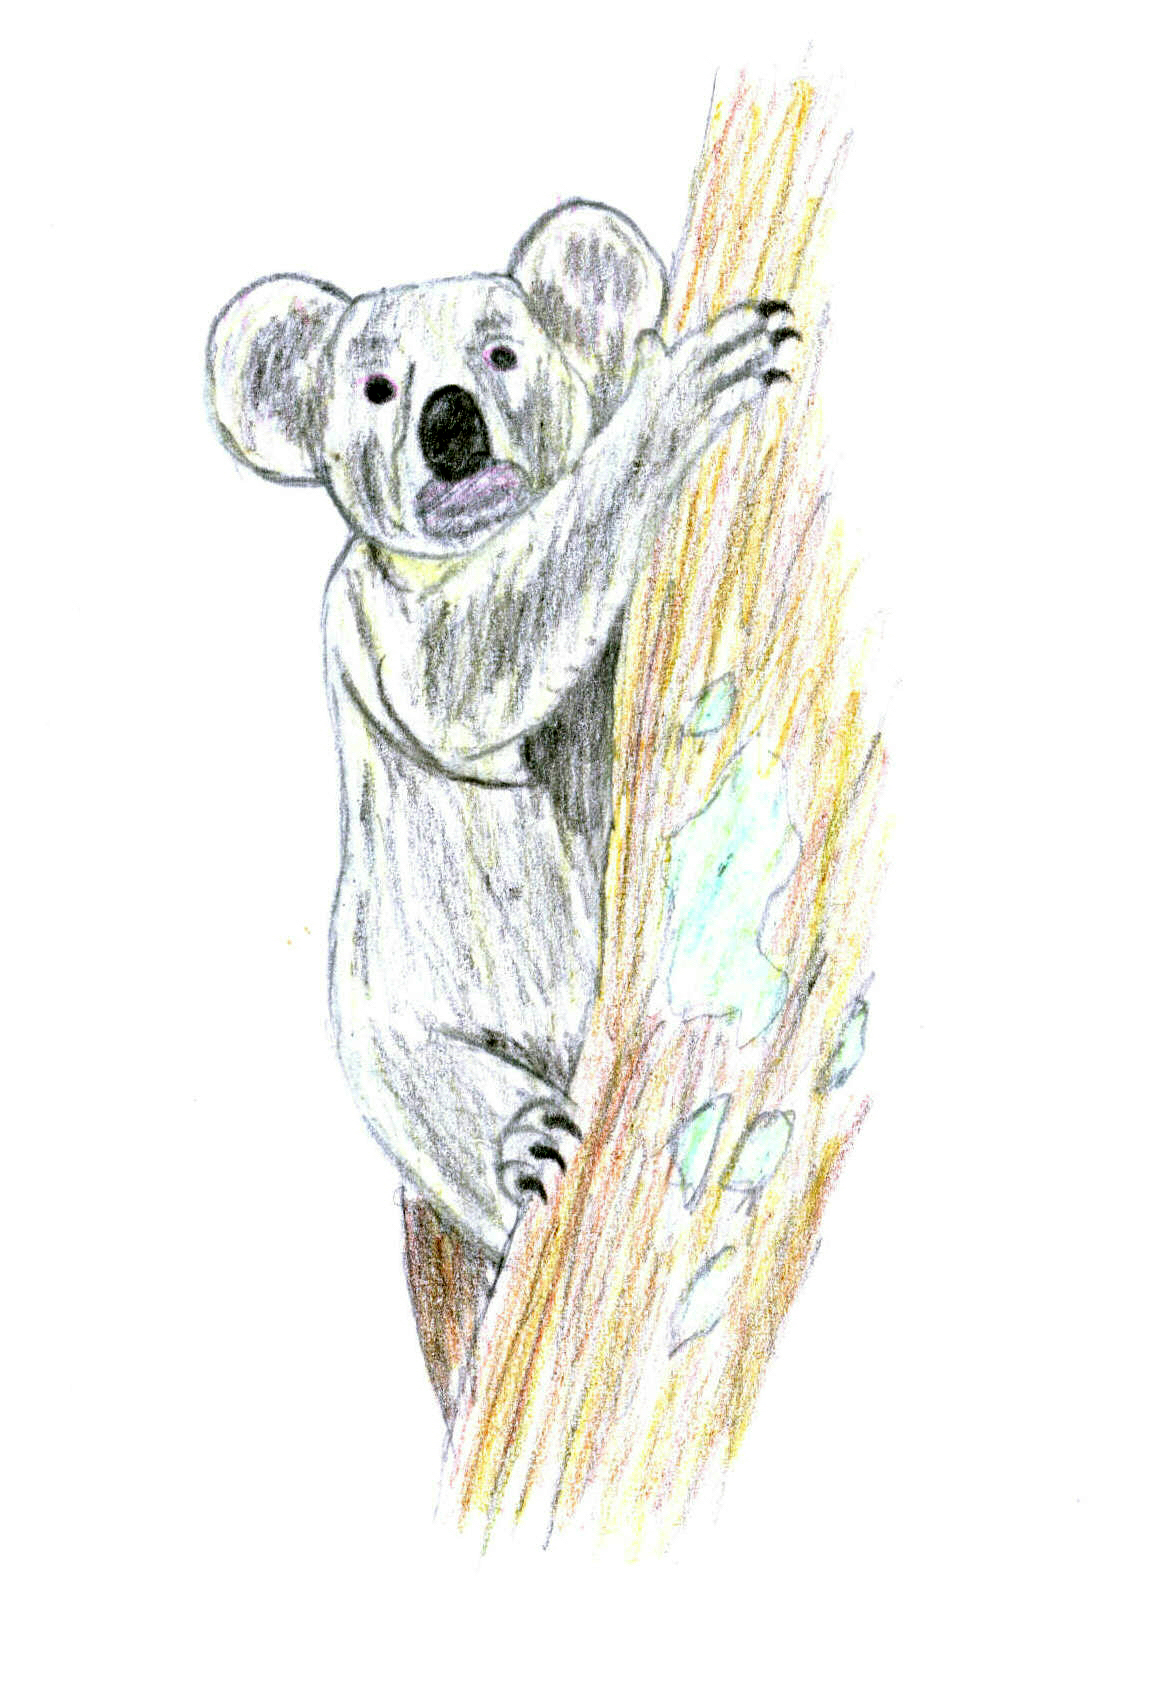 Funky Koala by blackdragon1991